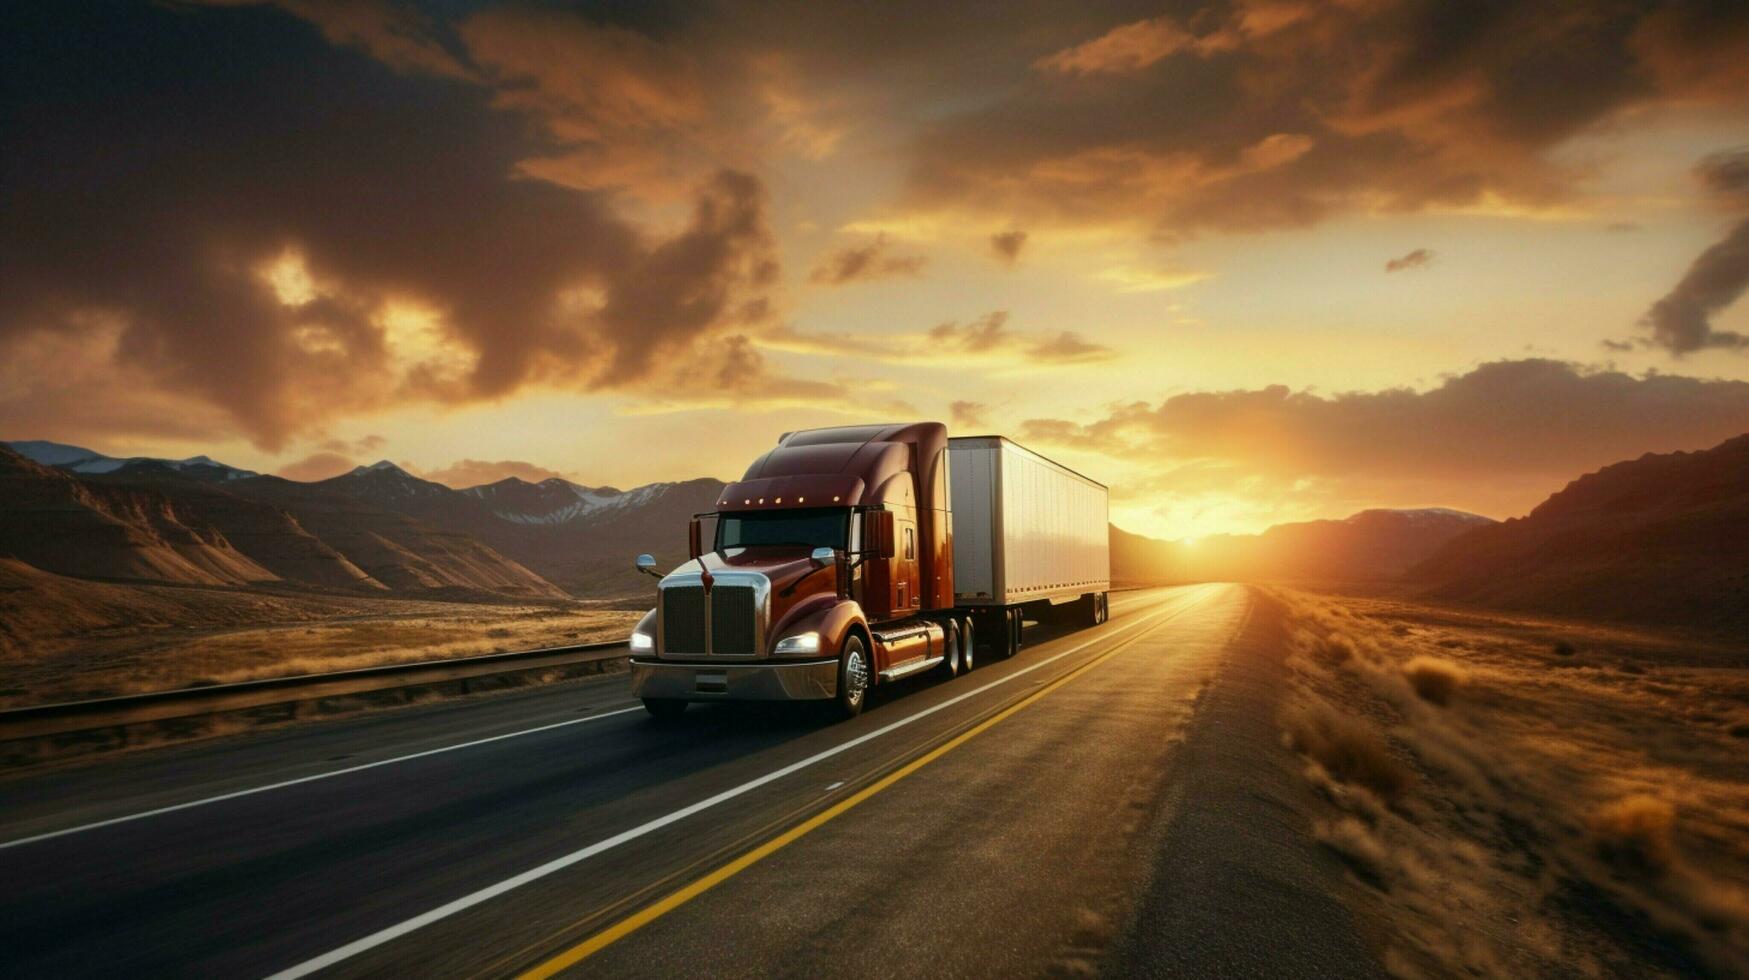 Soleil ensembles sur camionnage industrie longue périple photo